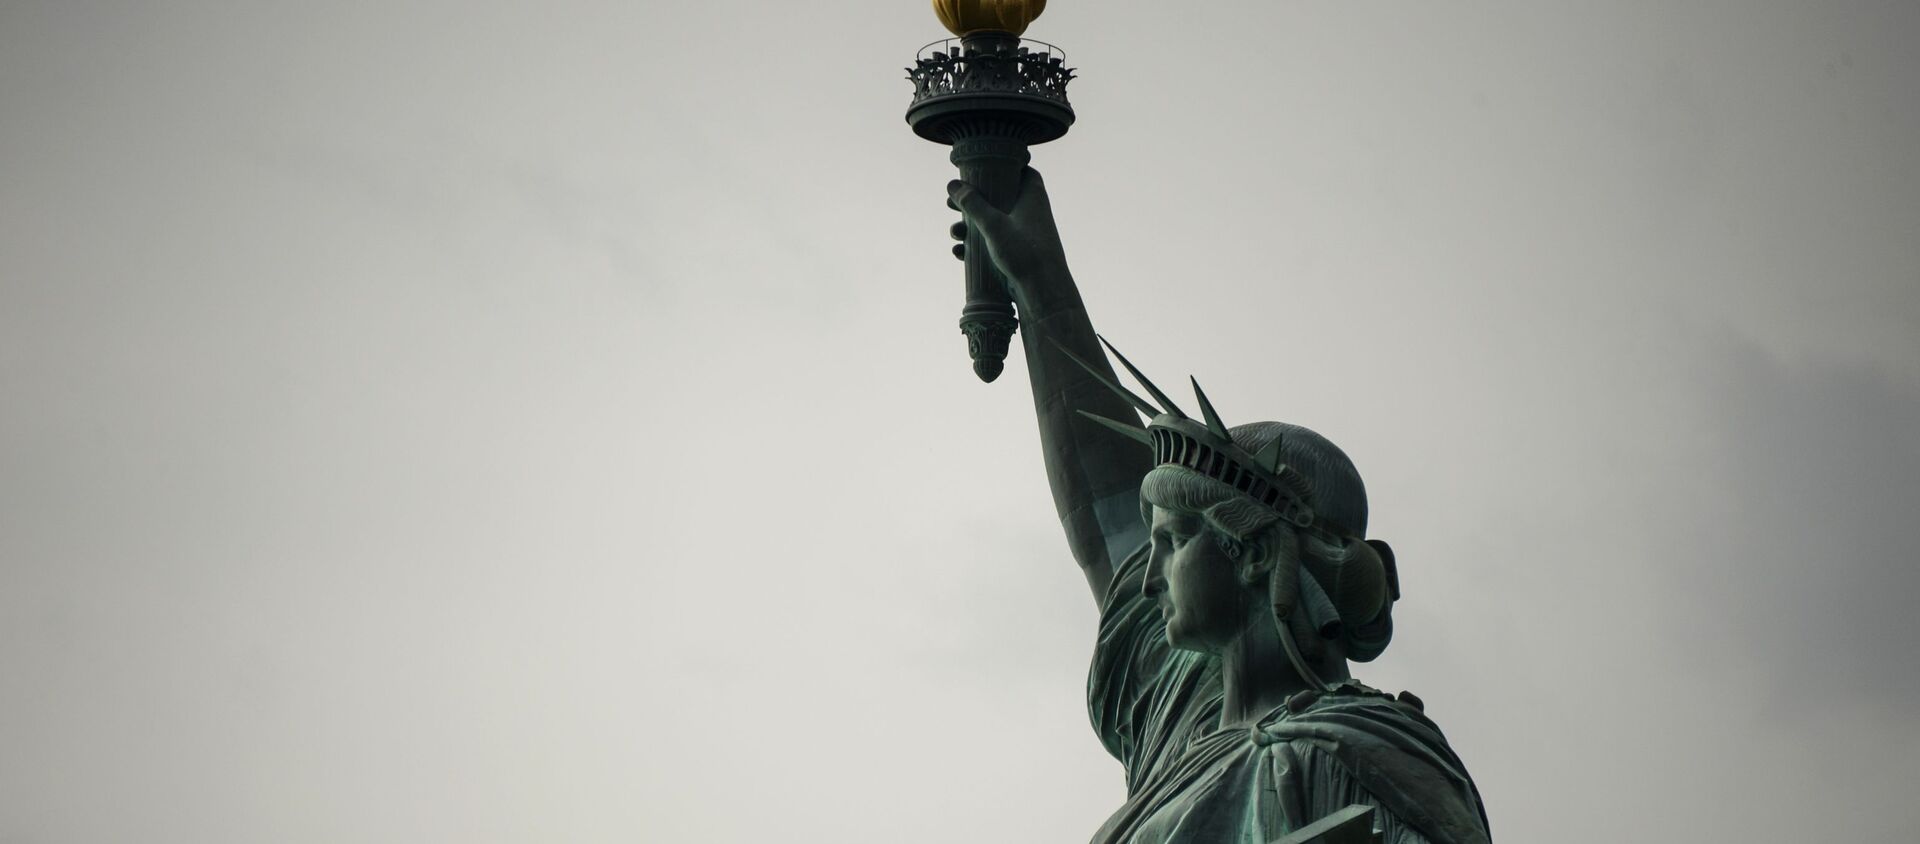 Статуя Свободы в Нью-Йорке. Архивное фото - Sputnik Кыргызстан, 1920, 22.01.2021